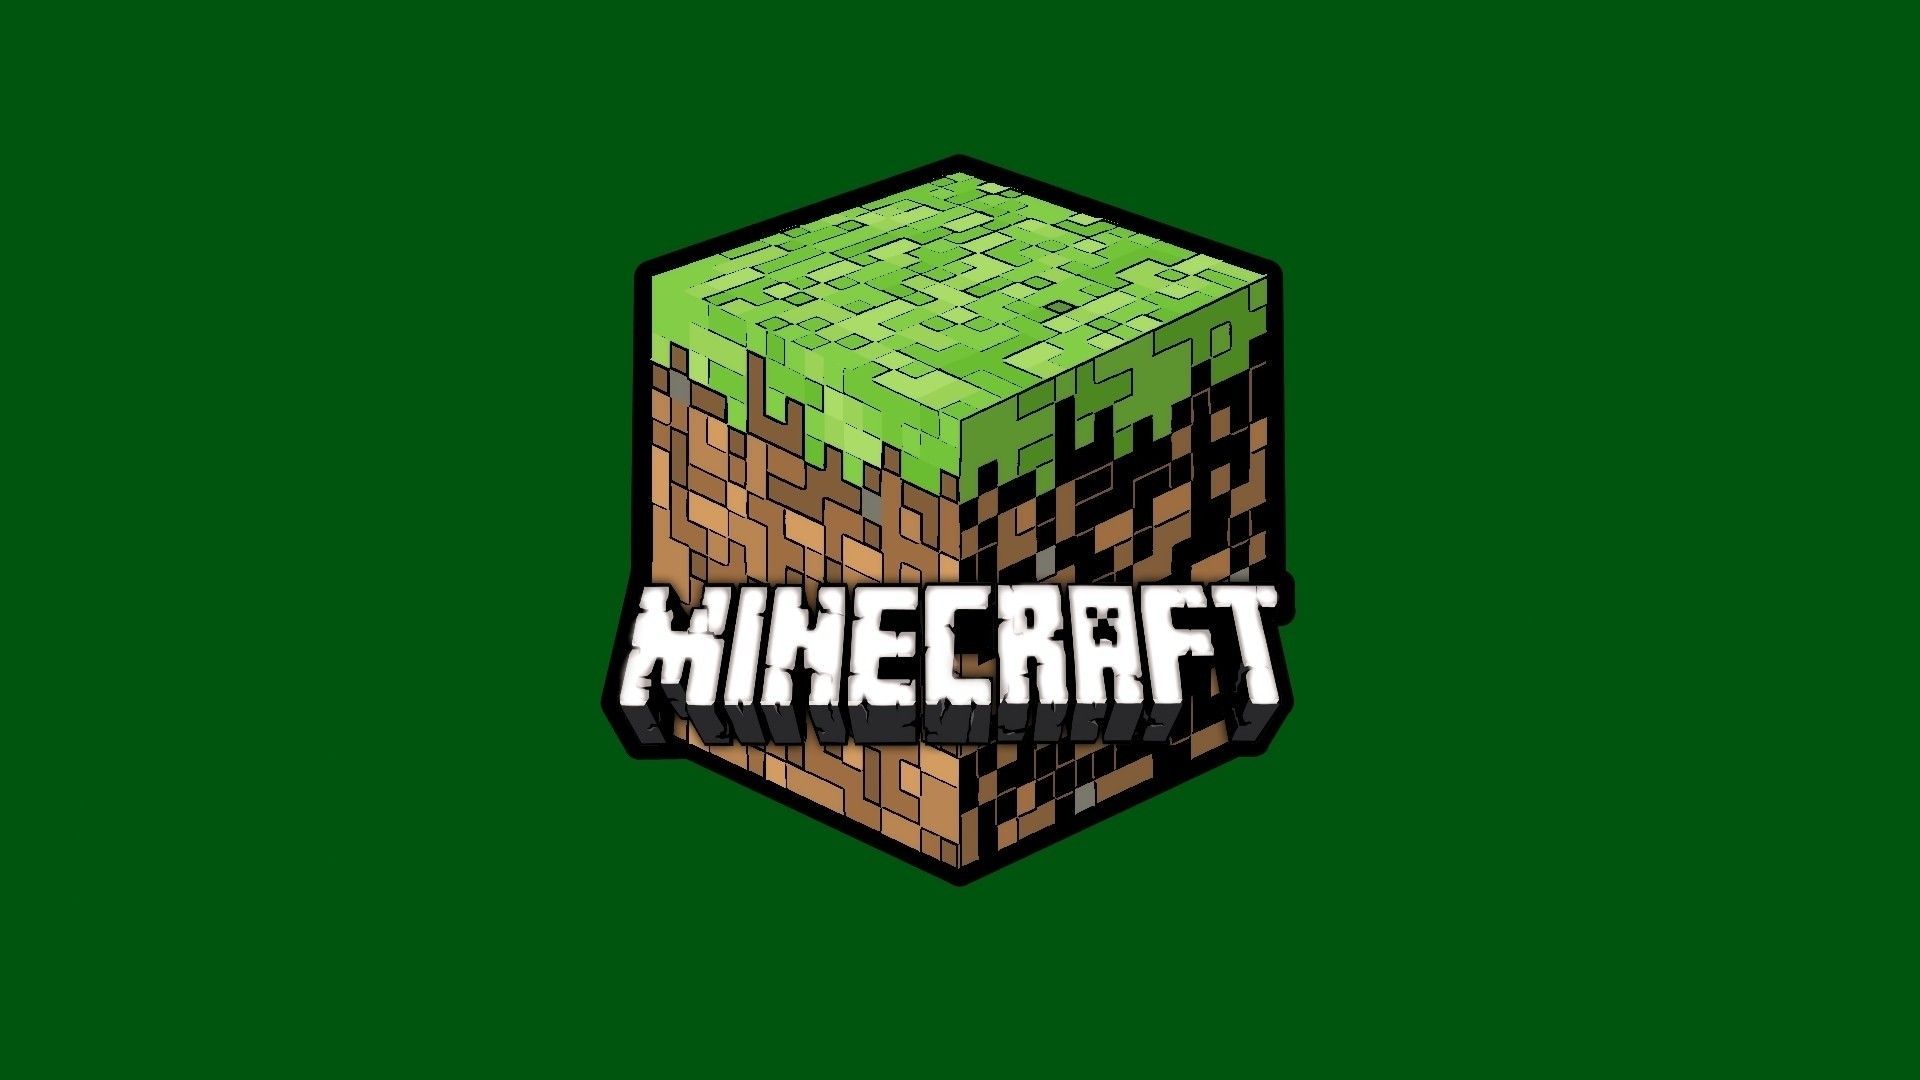 Hình nền Minecraft Logo - Với hình nền Minecraft Logo, bạn sẽ có được một giao diện hoàn hảo cho điện thoại hoặc máy tính của mình. Hình ảnh đầy màu sắc và sống động này sẽ mang lại trải nghiệm tuyệt vời khi sử dụng thiết bị của mình. Hãy cùng đến và tận hưởng vẻ đẹp của hình nền Minecraft Logo ngay bây giờ.